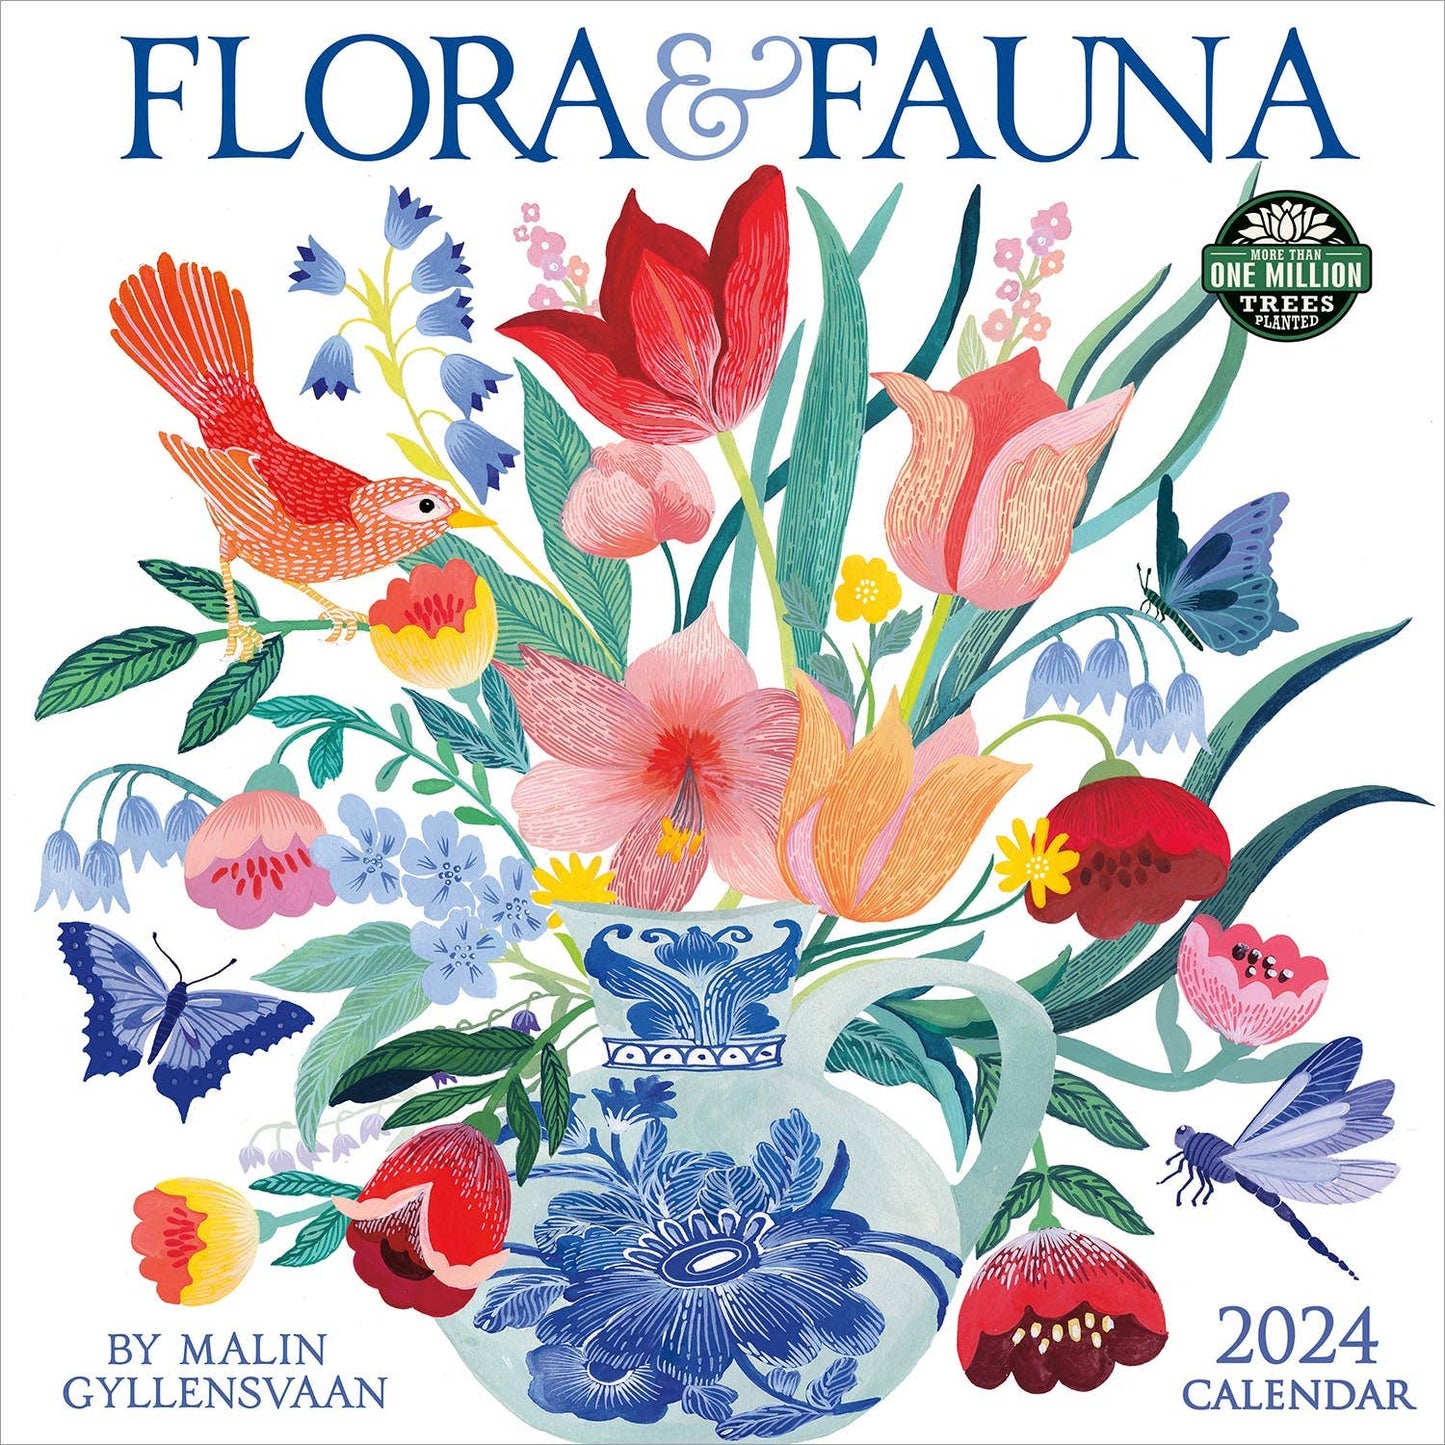 Flora & Fauna 2024 Wall Calendar by Malin Gyllensvaan